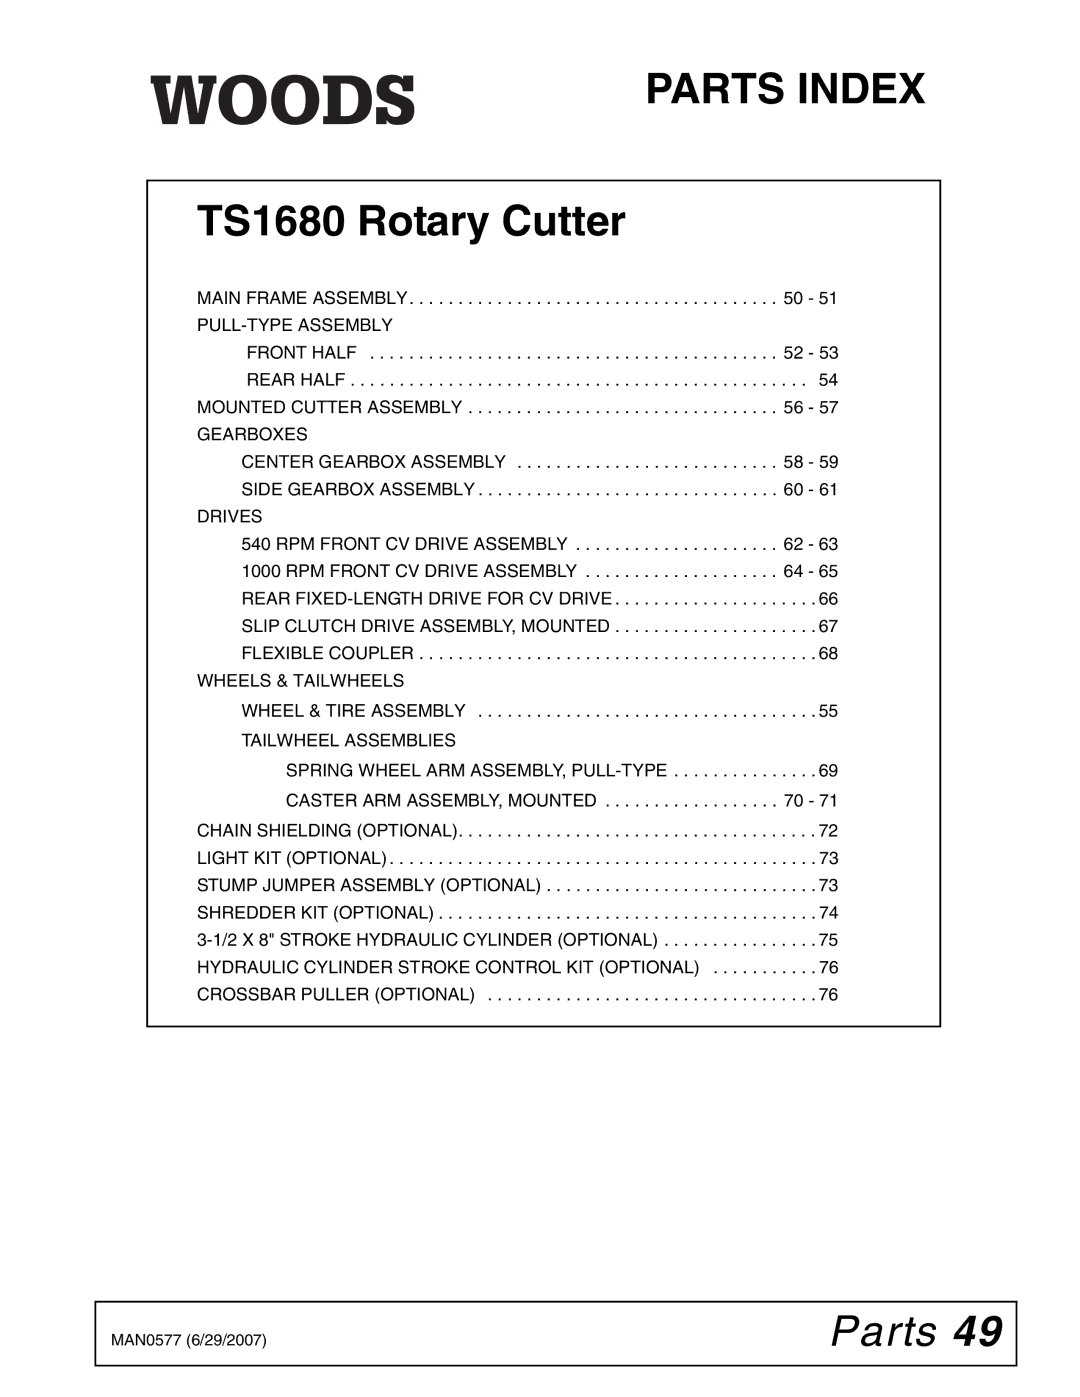 Woods Equipment TS1680Q manual Parts Index 